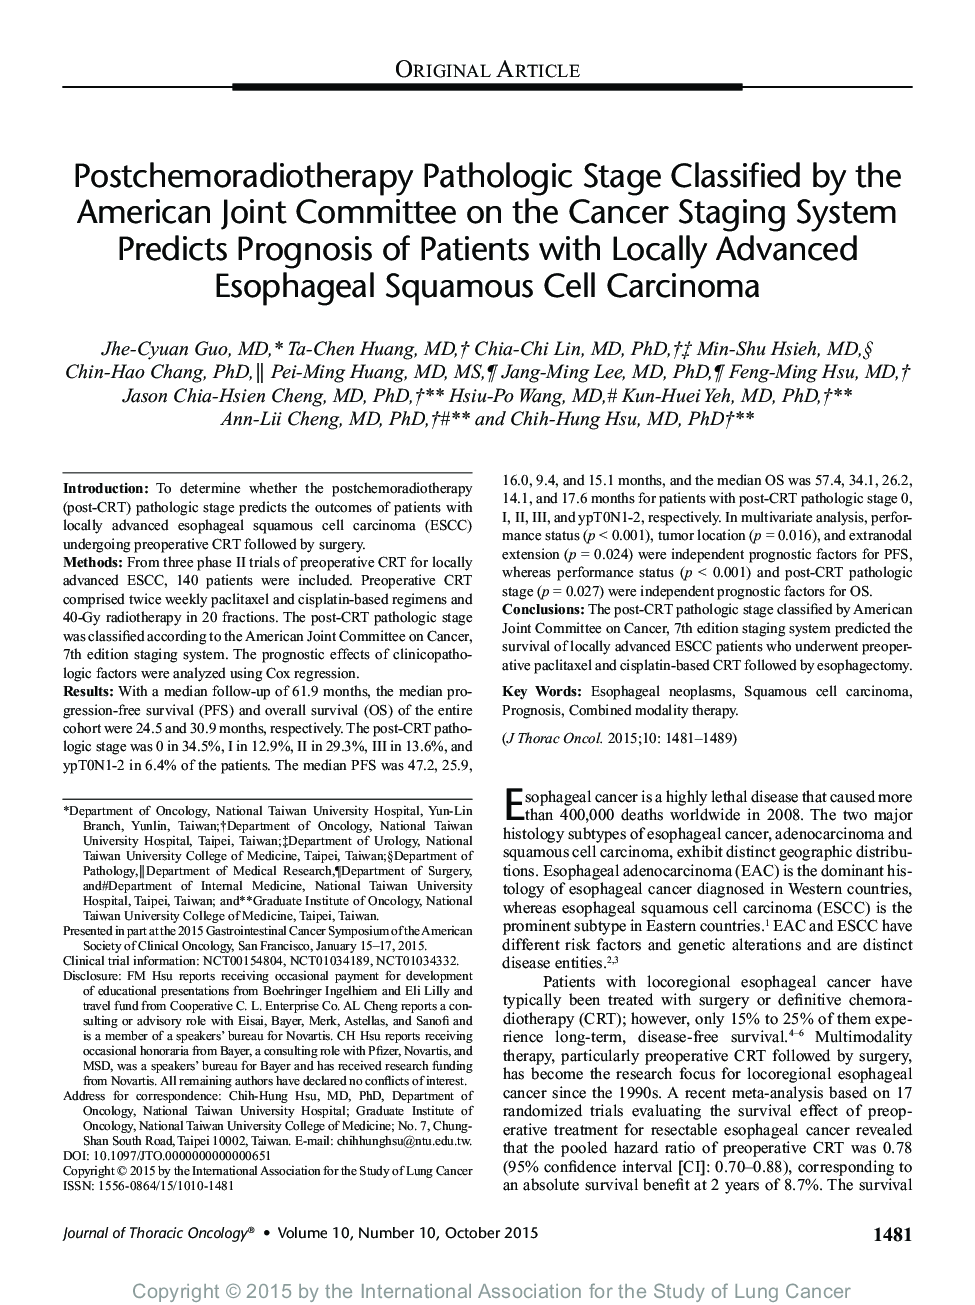 مرحله پاتولوژیک پس از زایمان در بیمارستان بستری شده توسط کمیته مشترک ایالات متحده در سیستم پیشگیری از سرطان مطرح شده پیش بینی بیماری بیماران مبتلا به سرطان سلول سنگفرشی مایع پیشرفته 